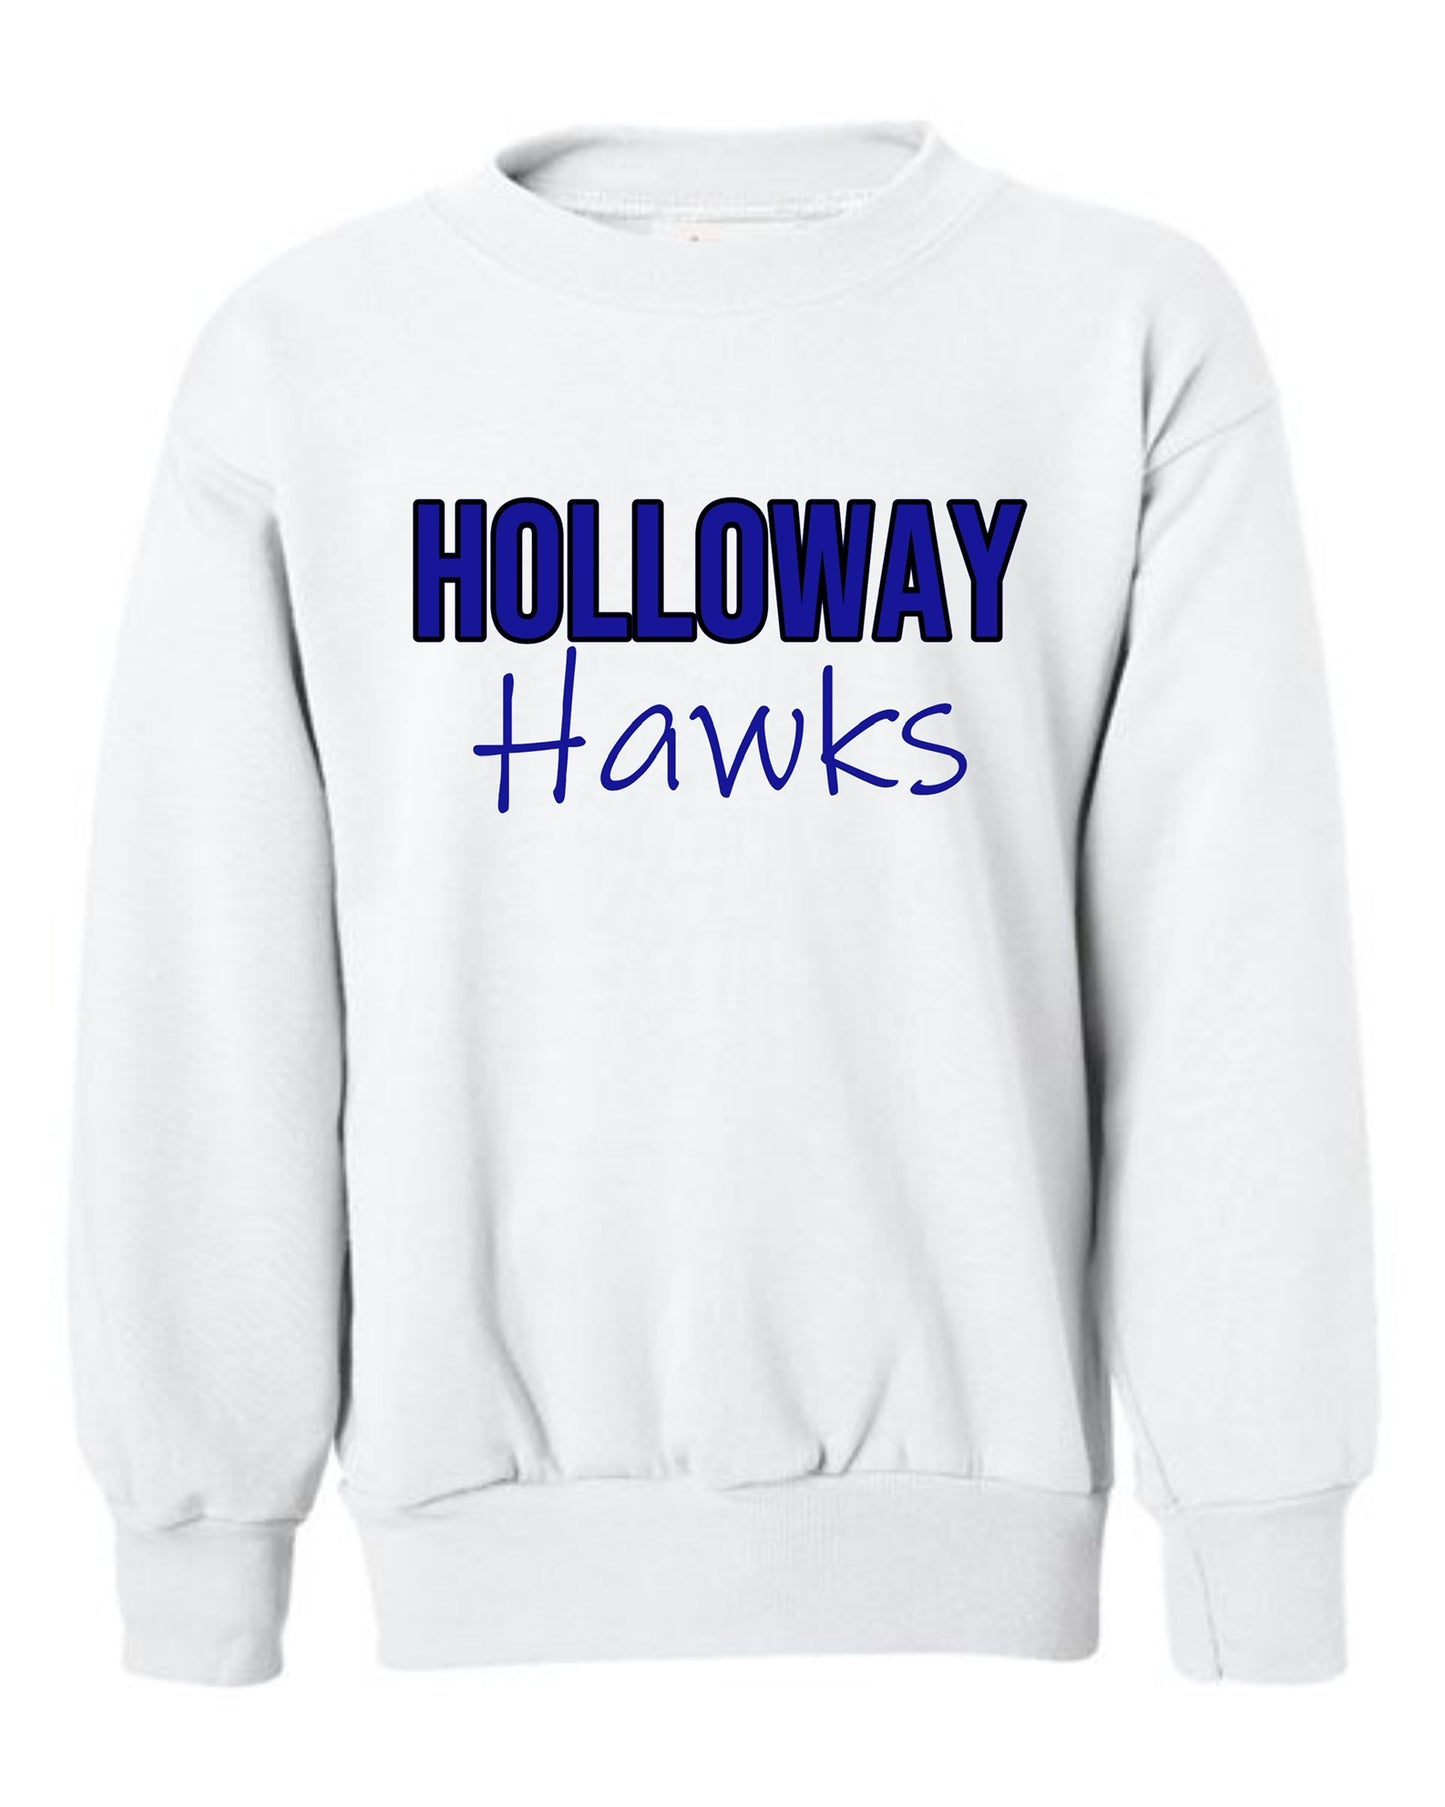 Holloway Hawks Sweatshirt